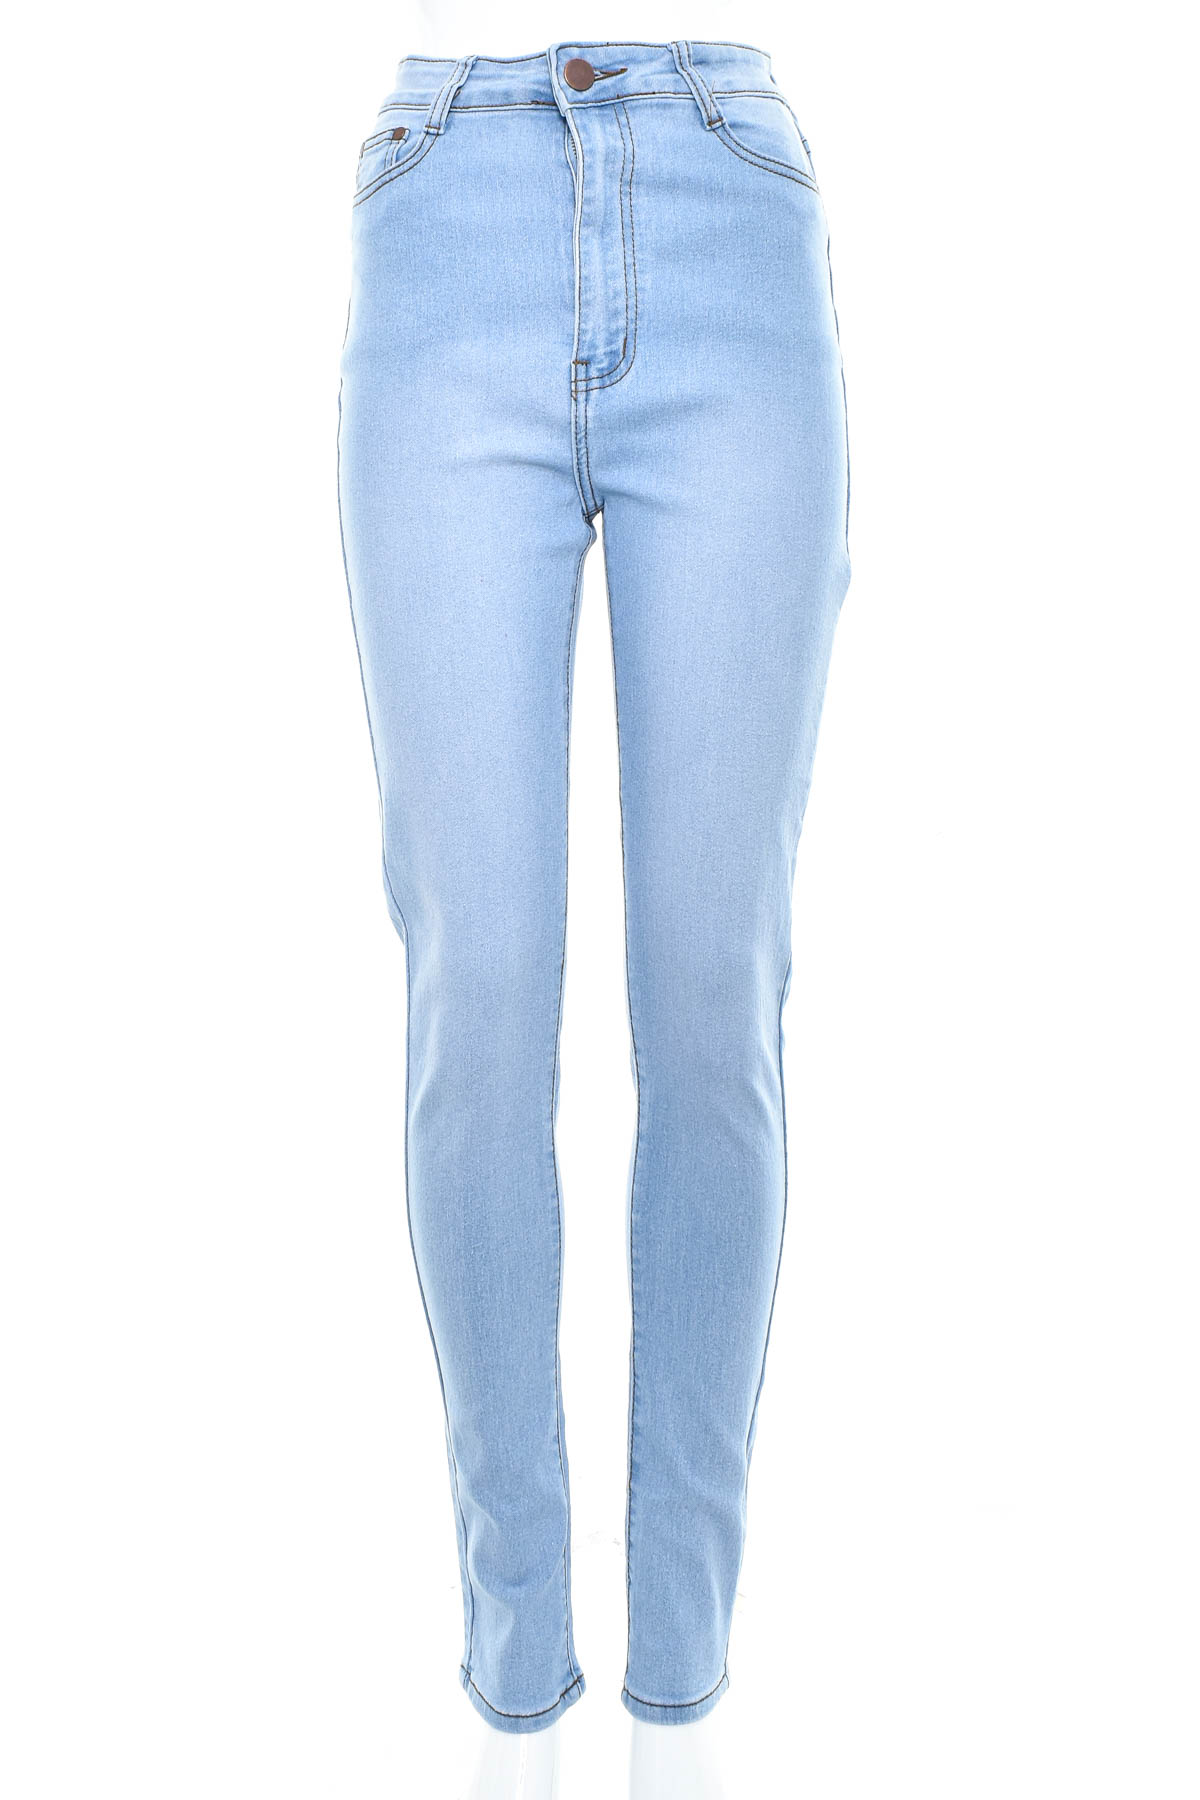 Dżinsy dla dziewczynki - BOB Jeans - 0